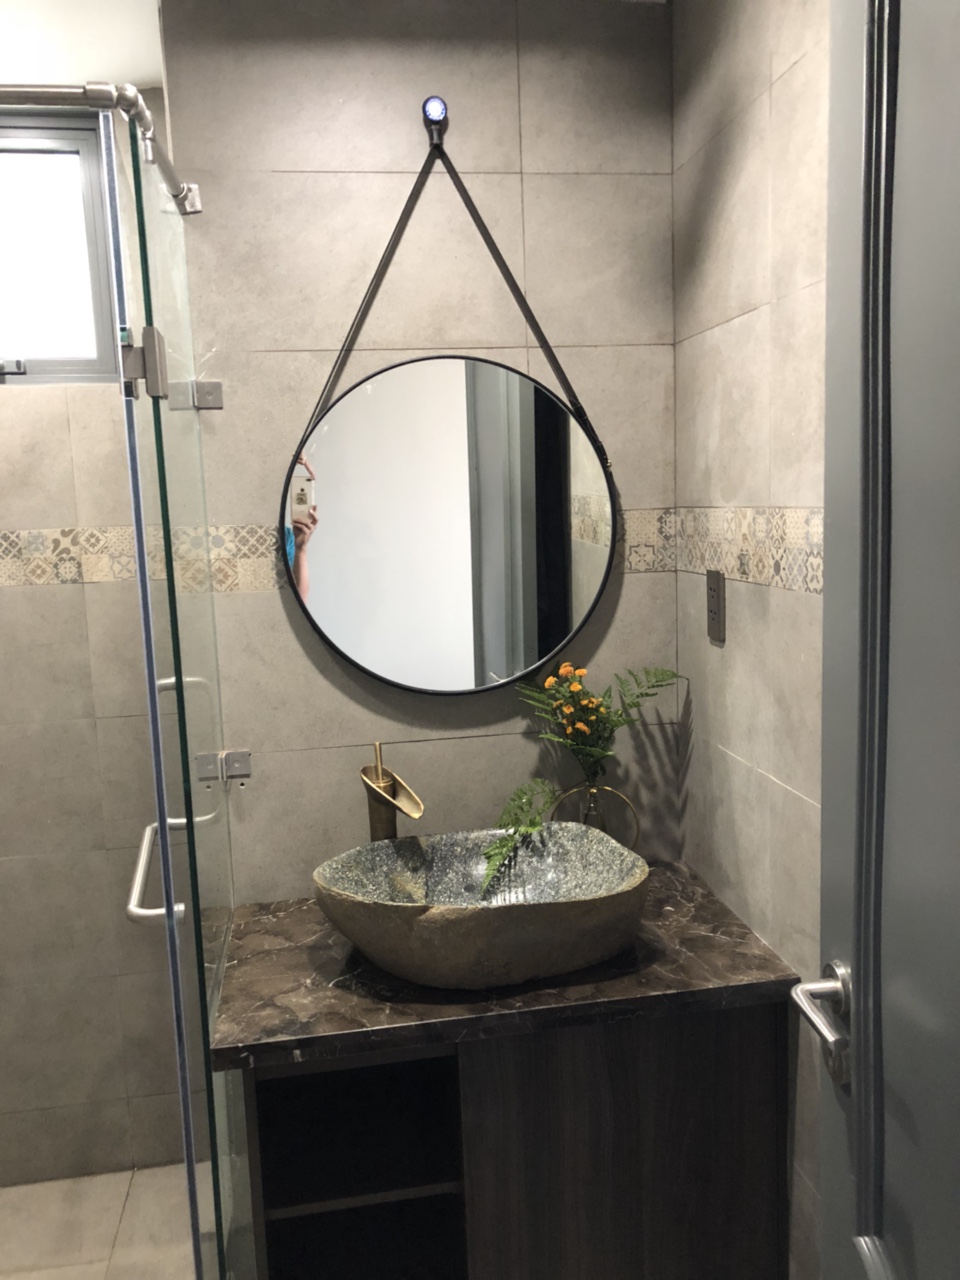 Gương phòng tắm treo tường decor từ Hồ Chí Minh với dây da cao cấp mang đến một phong cách hiện đại và đầy cá tính cho không gian phòng tắm của bạn. Sản phẩm được sản xuất và hoàn thiện bằng chất liệu tốt nhất, mang lại cho bạn một sản phẩm hoàn hảo về chất lượng và thẩm mỹ.